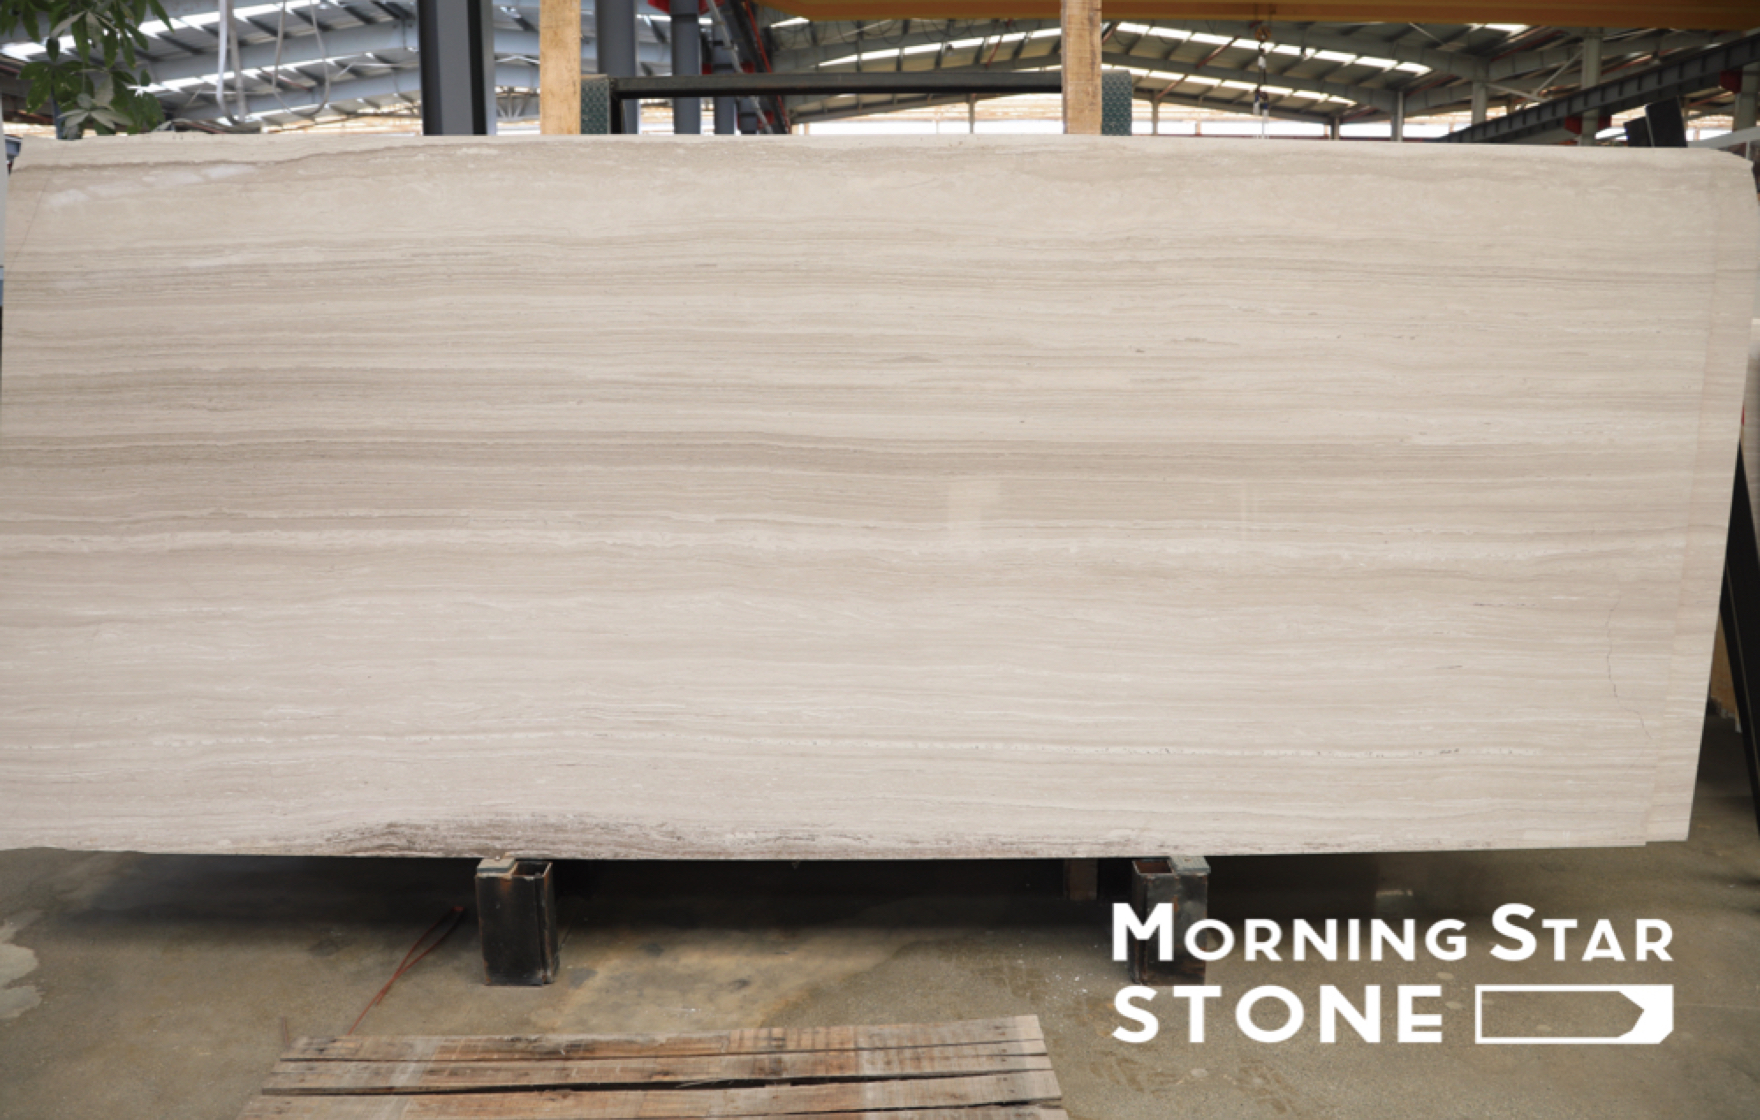 Preobrazite svoj dom bezvremenskom ljepotom bijelog drvenog mramora iz Morningstar Stonea